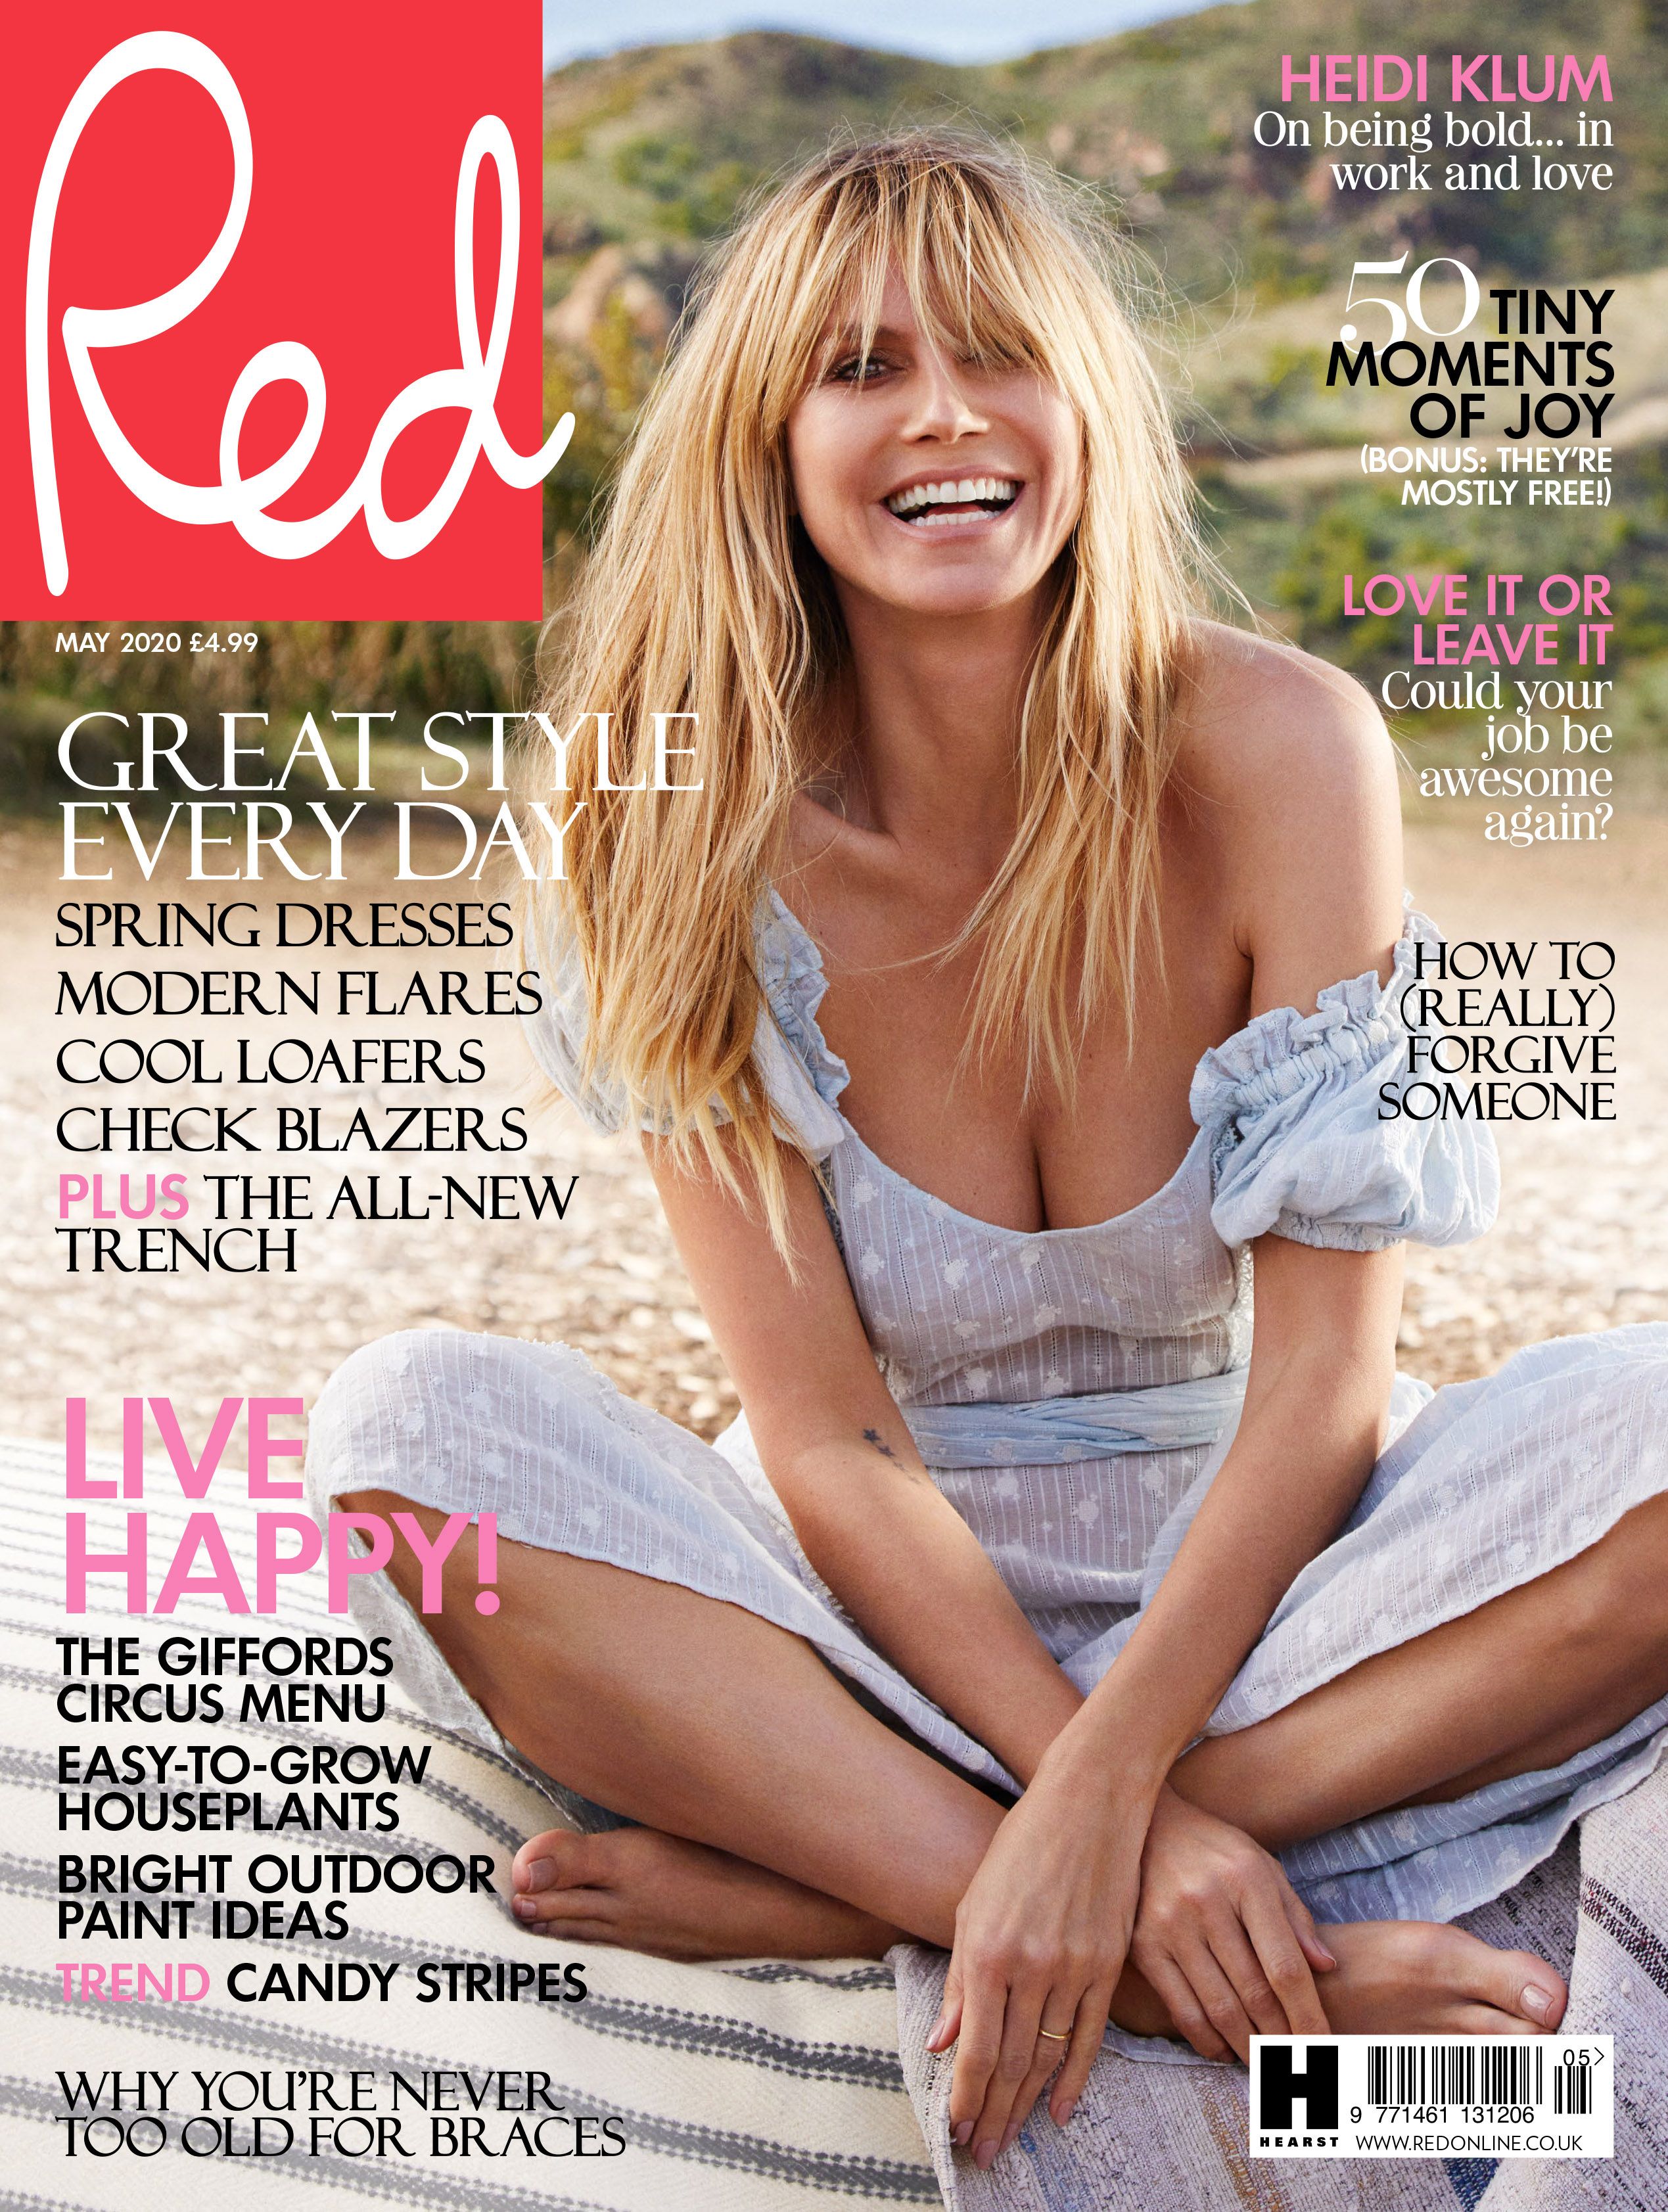 Fotos n°1 : Heidi Klum en la revista Red!